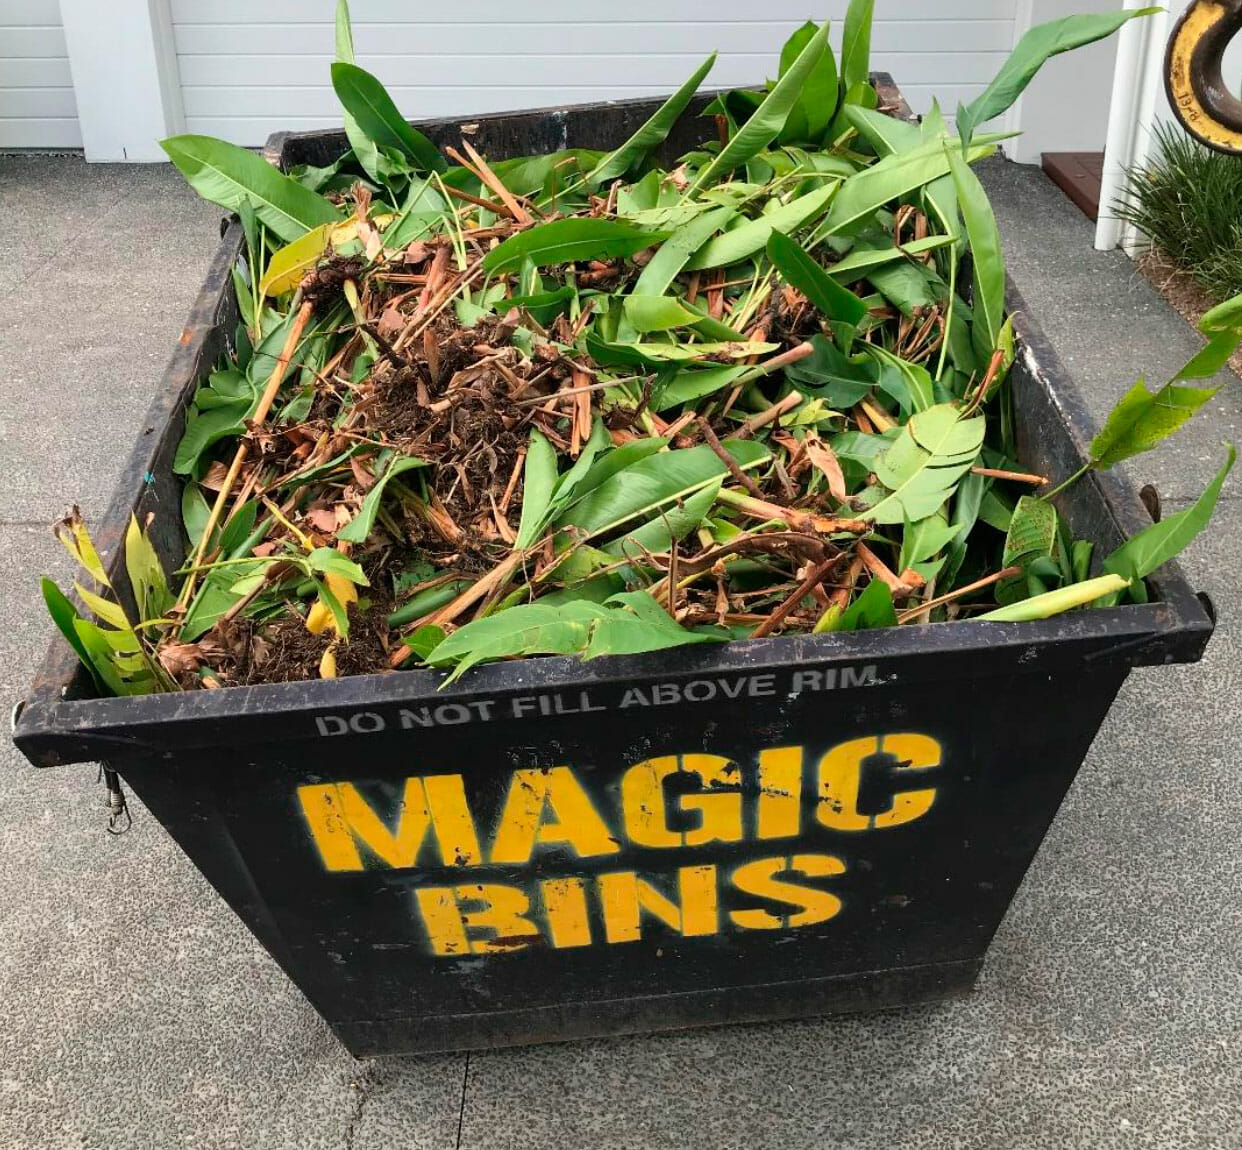 Magic bin with green waste